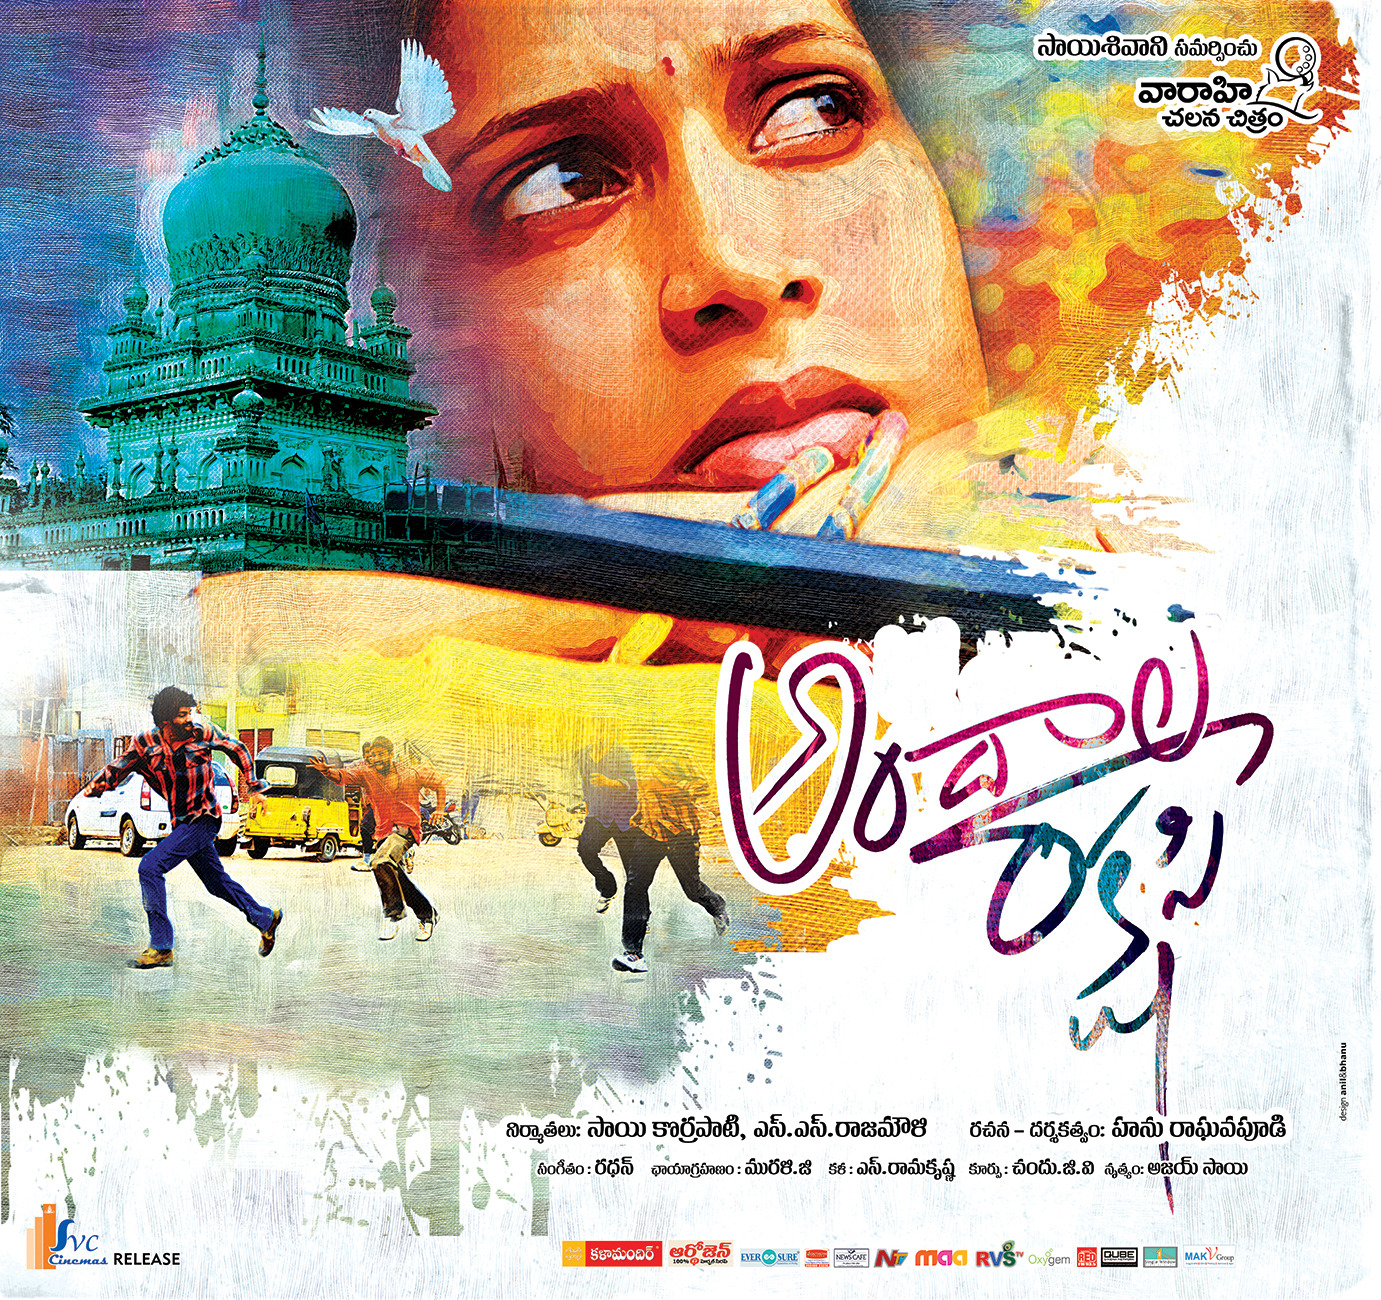 Extra Large Movie Poster Image for Andala Rakshasi (#5 of 5)